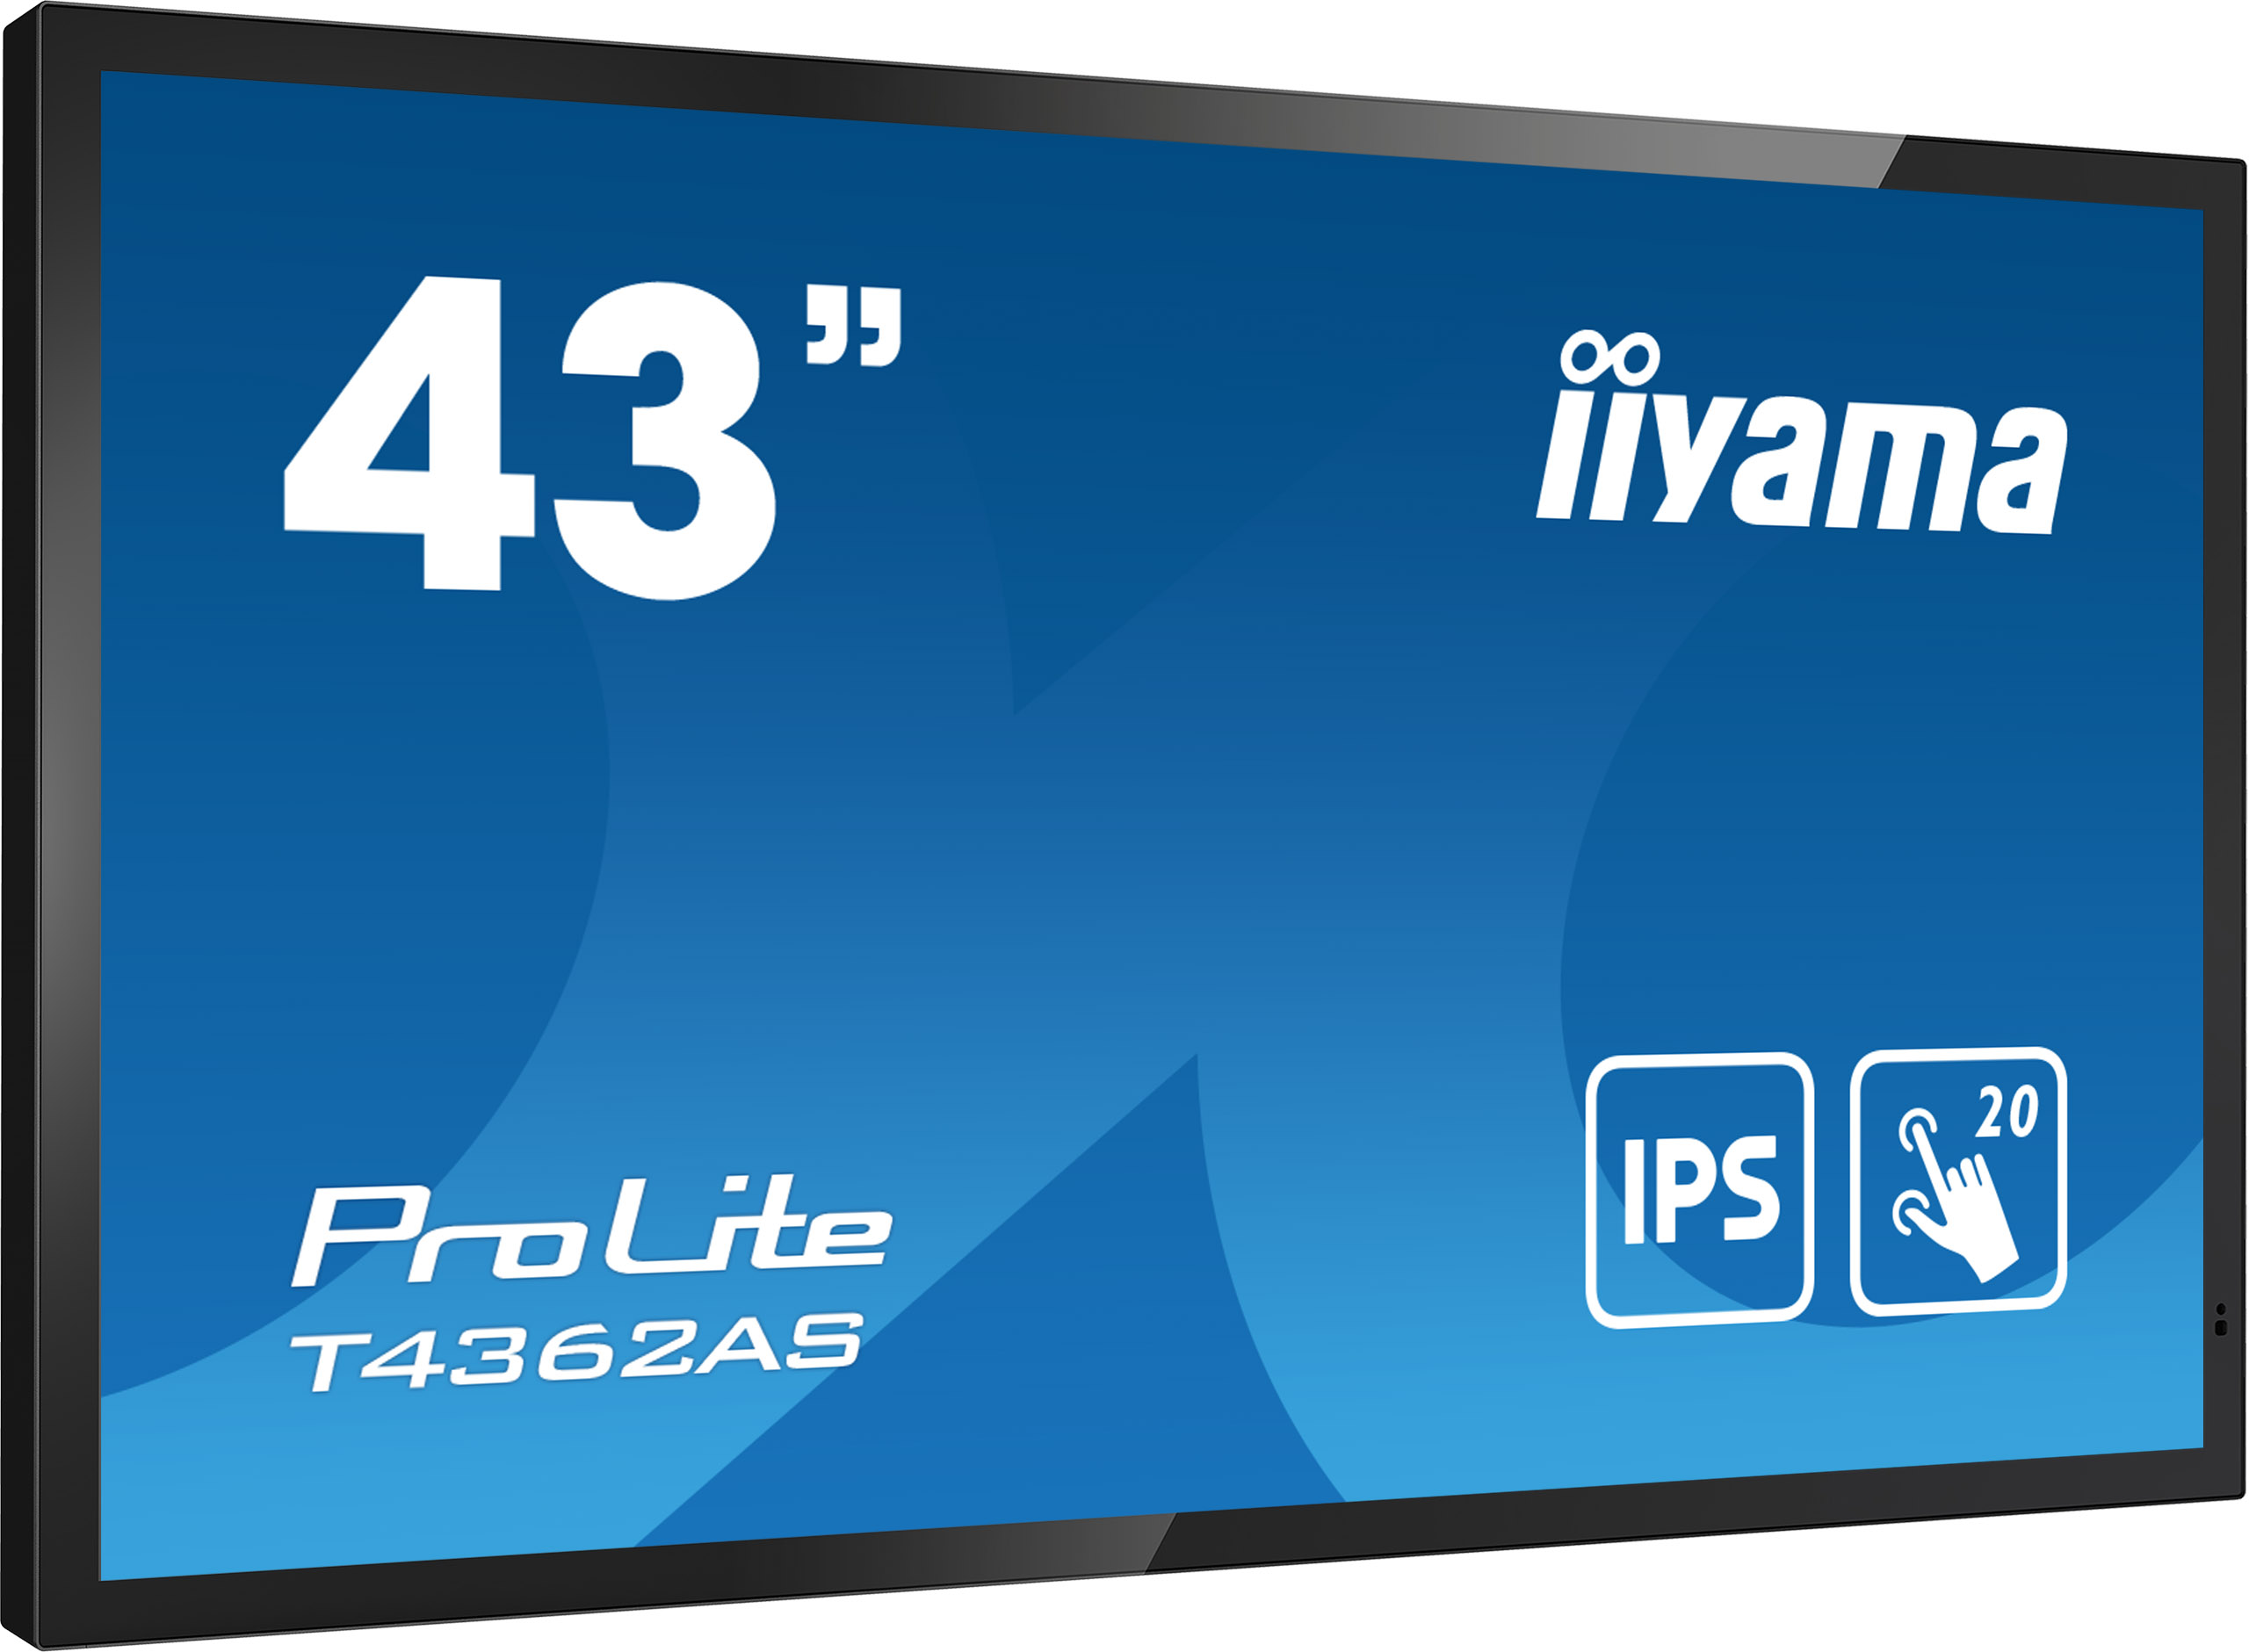 43" iiyama T4362AS-B1:IPS, 4K UHD, Android, 24/ 7 